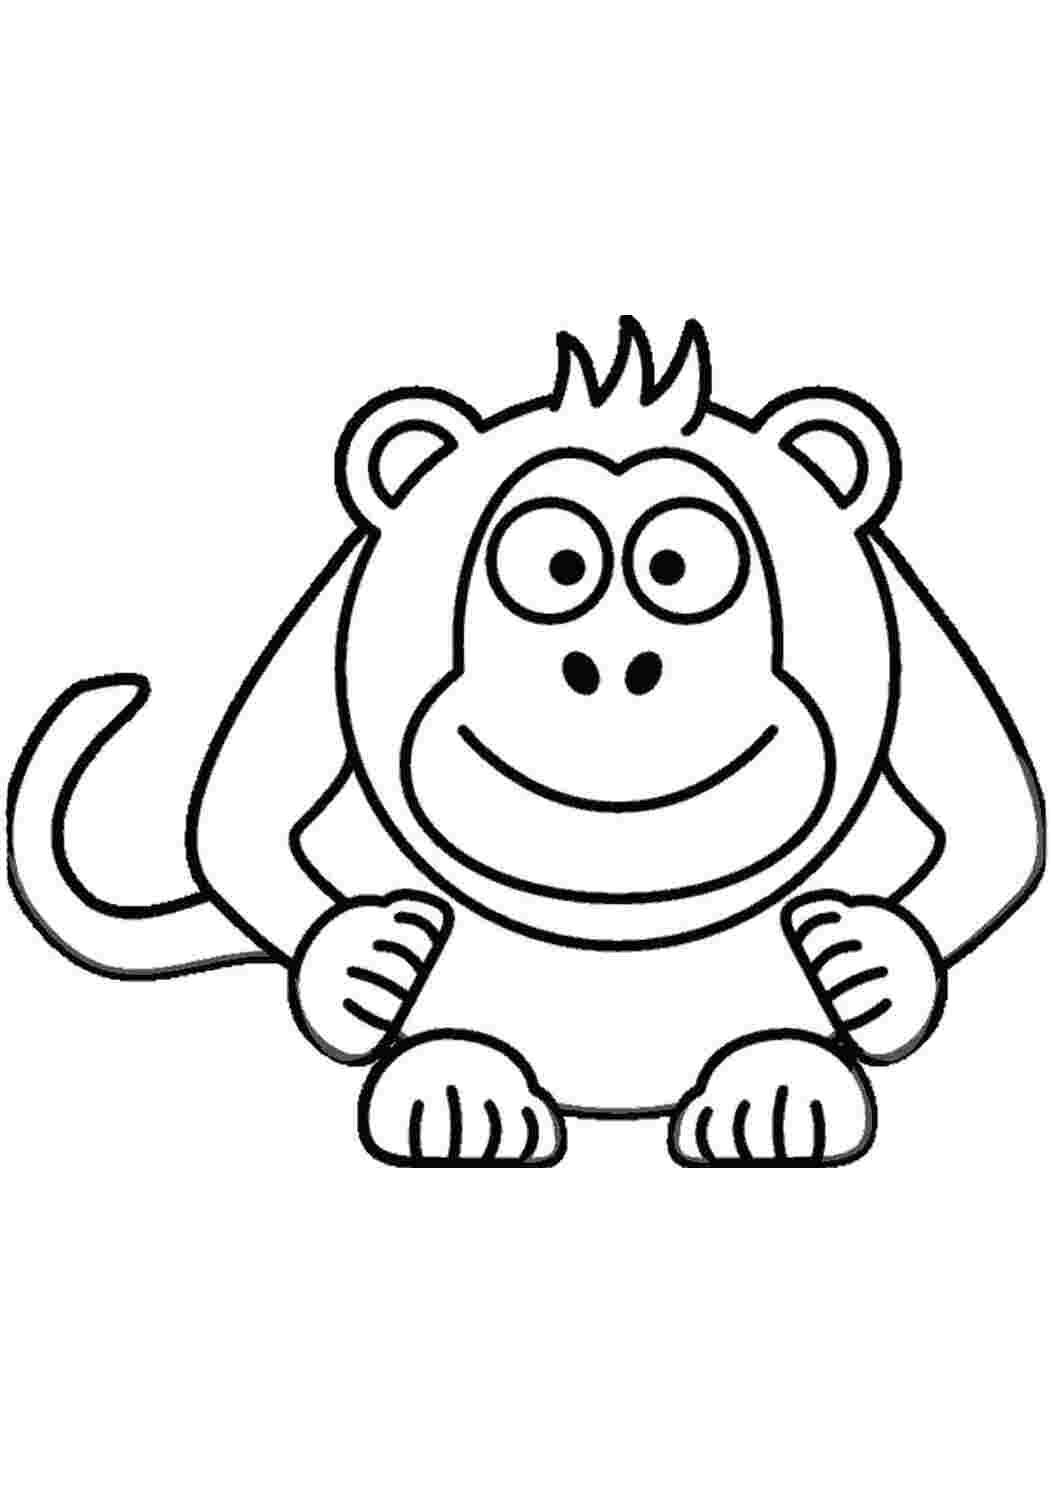 Раскраски обезьянки. Раскраска обезьяна для детей скачать